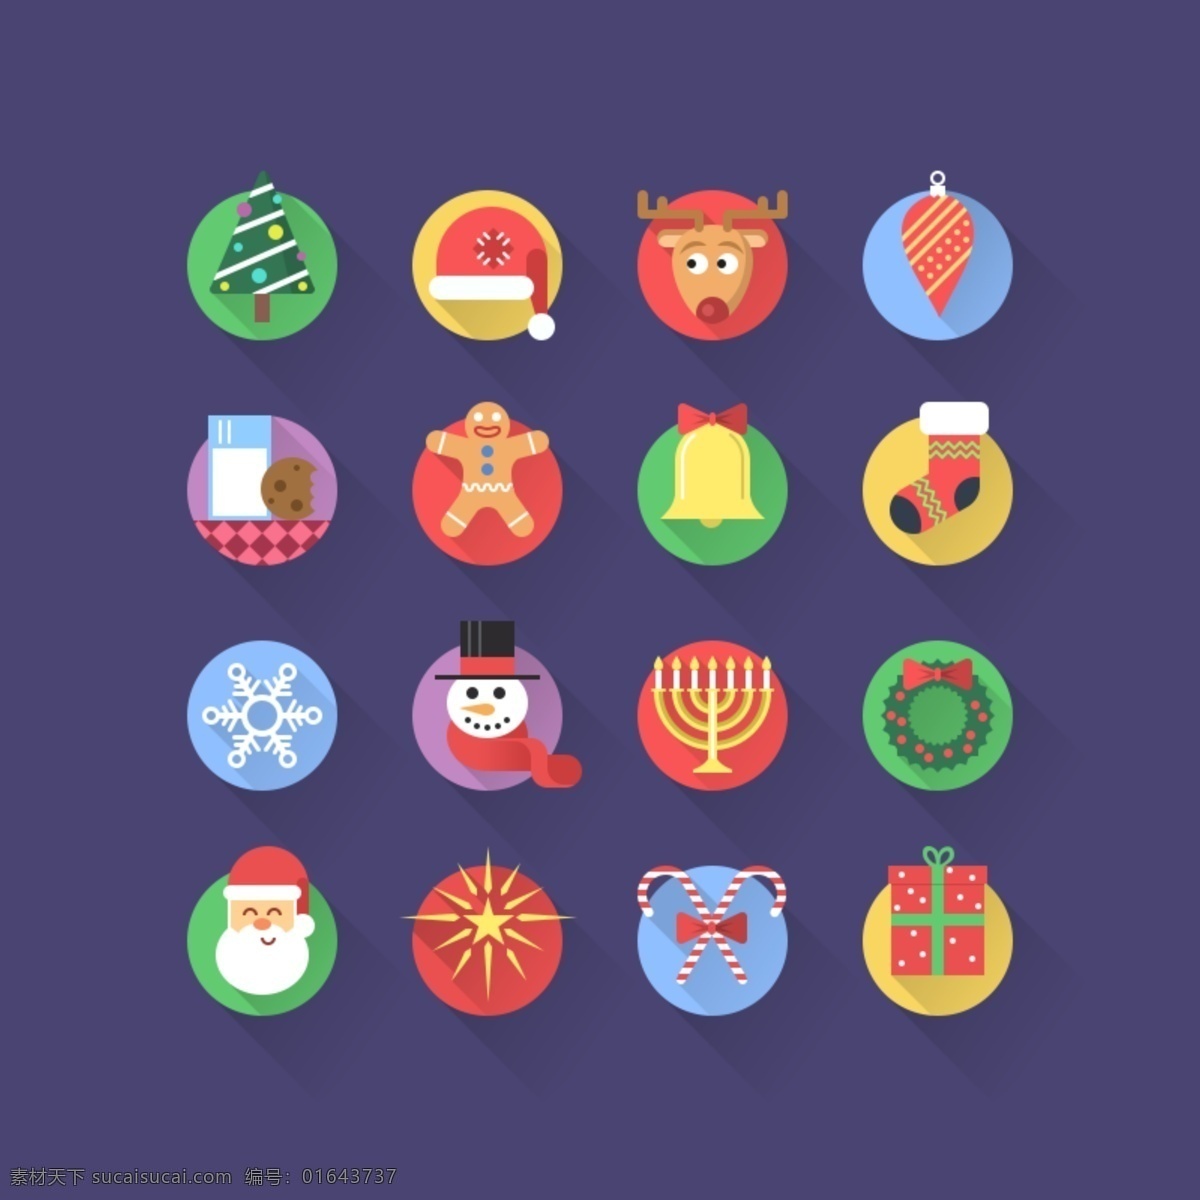 圣诞节 icons icon 圣诞节元素 圣诞节素材 圣诞节图标 图标 雪人 小鹿 袜子 铃铛 圣诞树 礼物 礼物盒